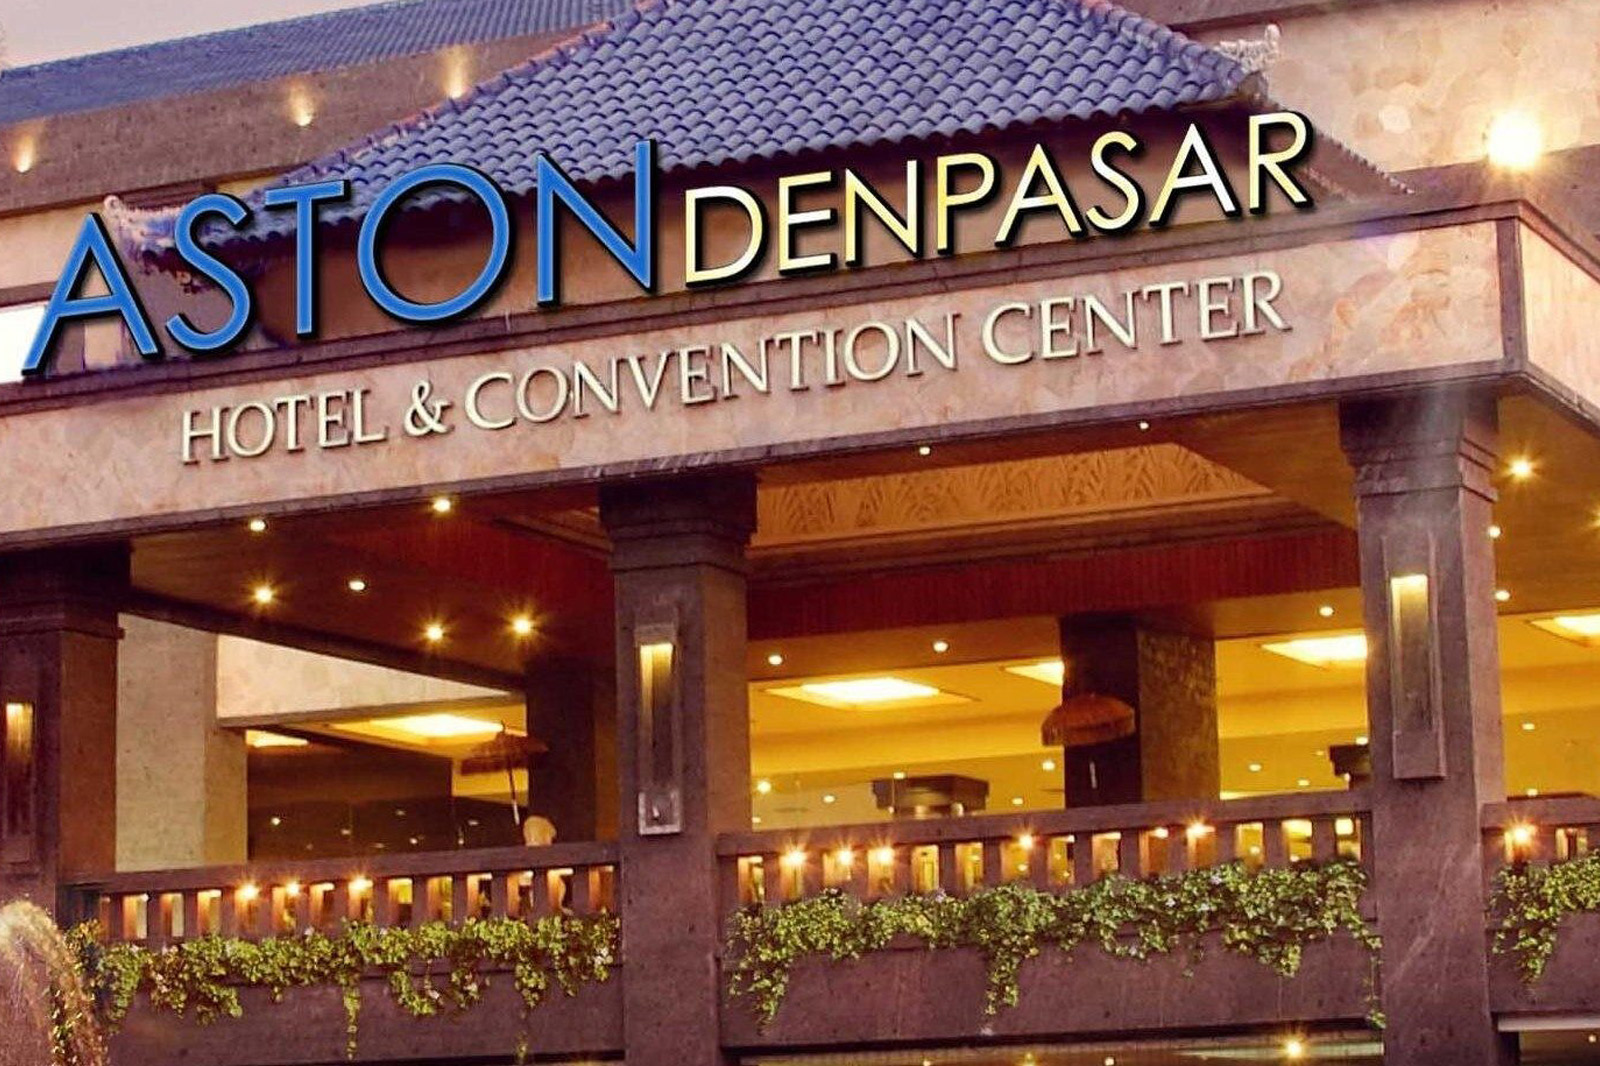 aston denpasar hotel & convention center